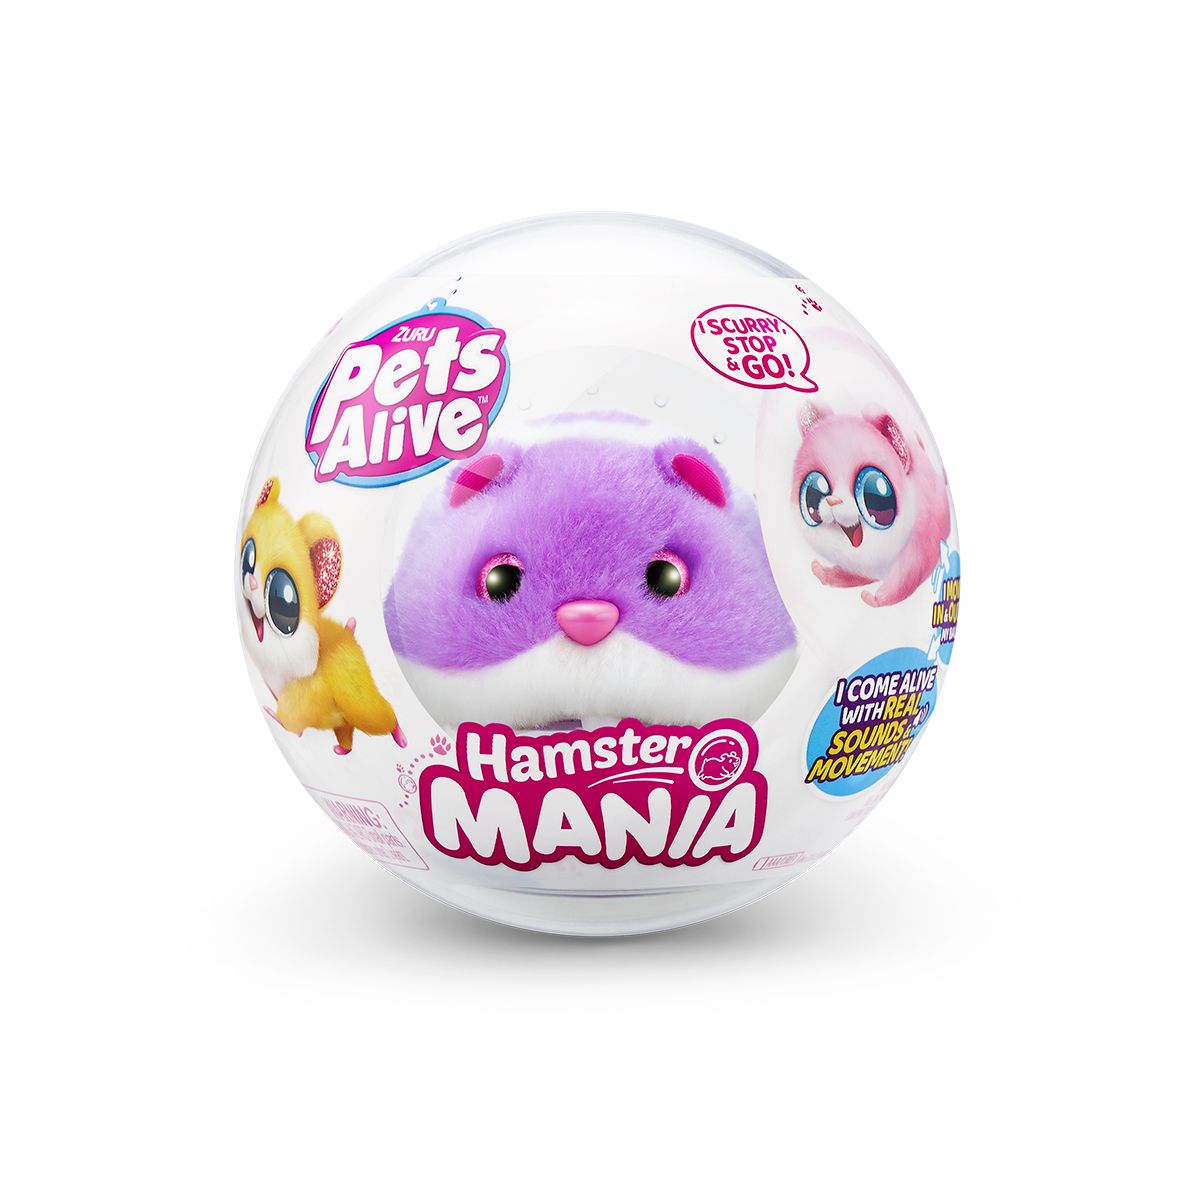 Интерактивная мягкая игрушка S1 - Забавный хомячок (фиолетовый)